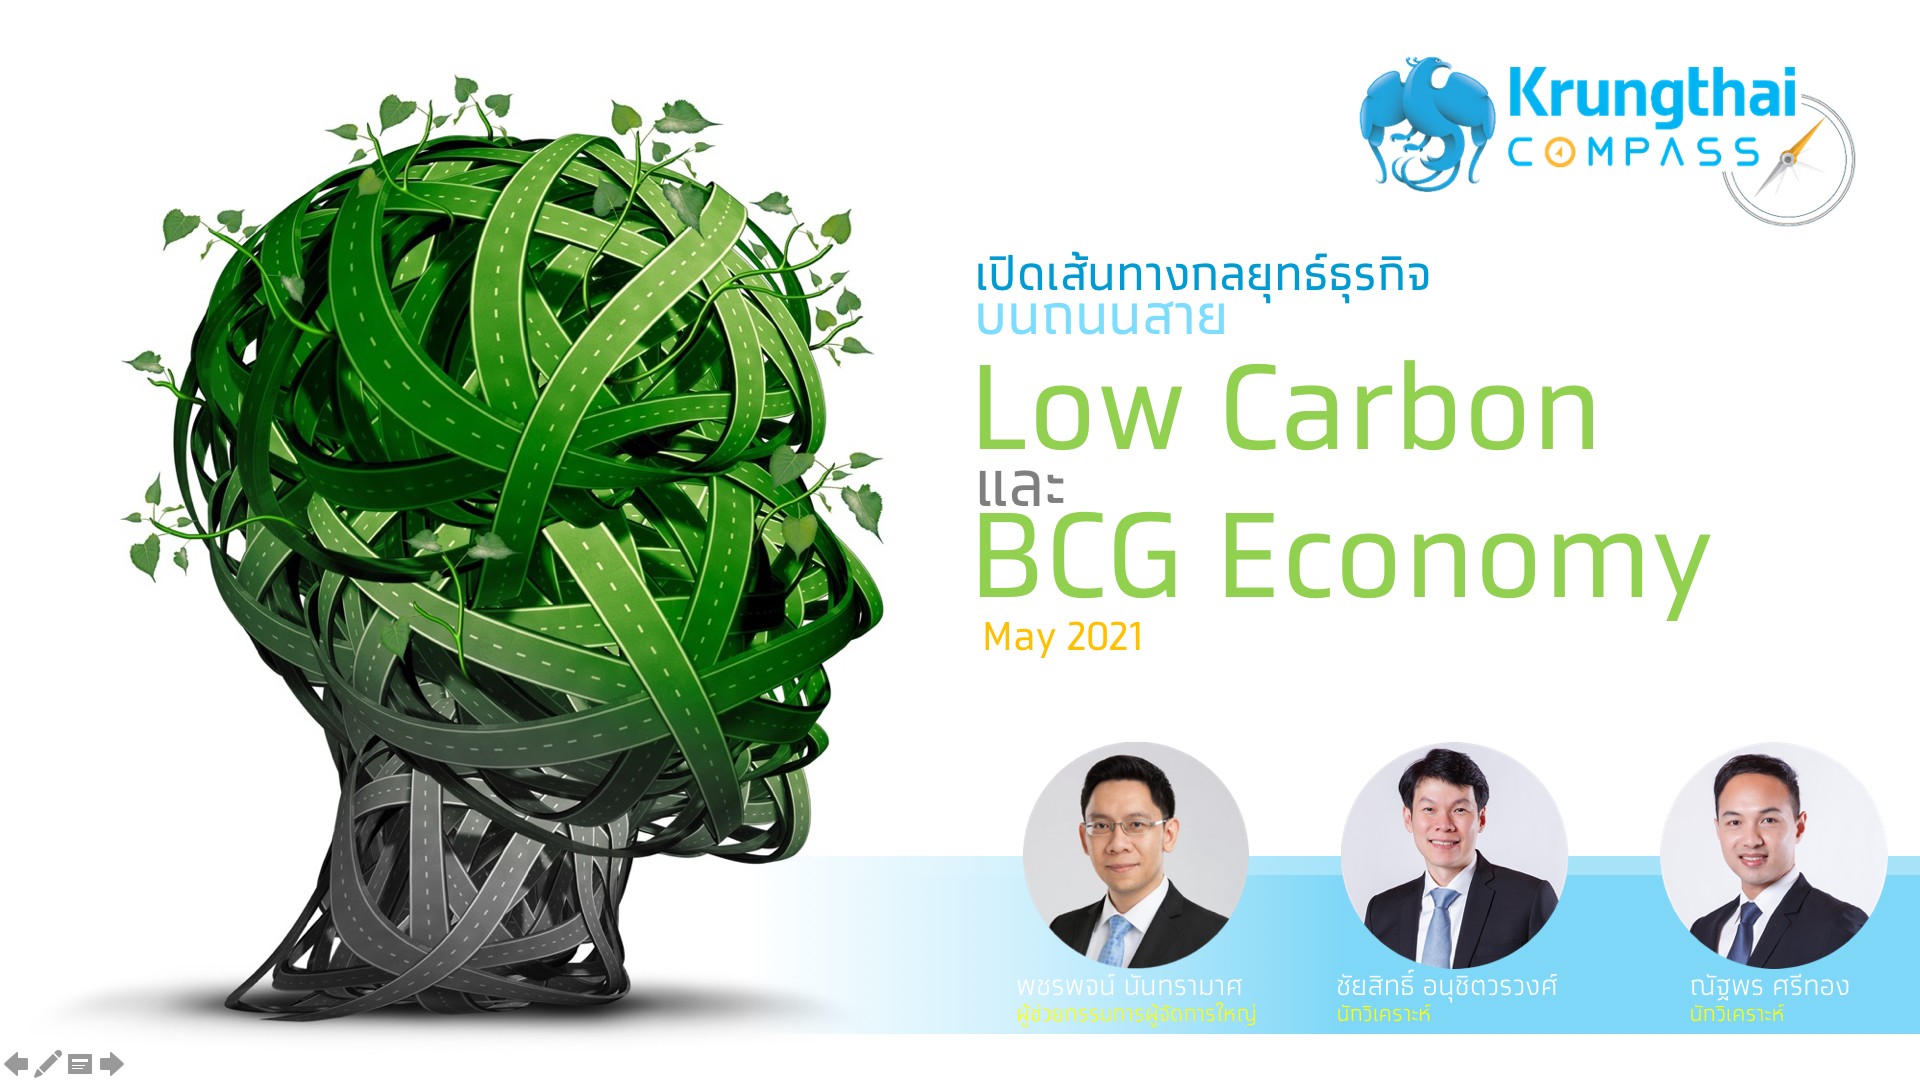 กรุงไทยแนะภาคธุรกิจเริ่มประเมิน Carbon Footprint-ใช้โมเดล BCG สร้างโอกาส